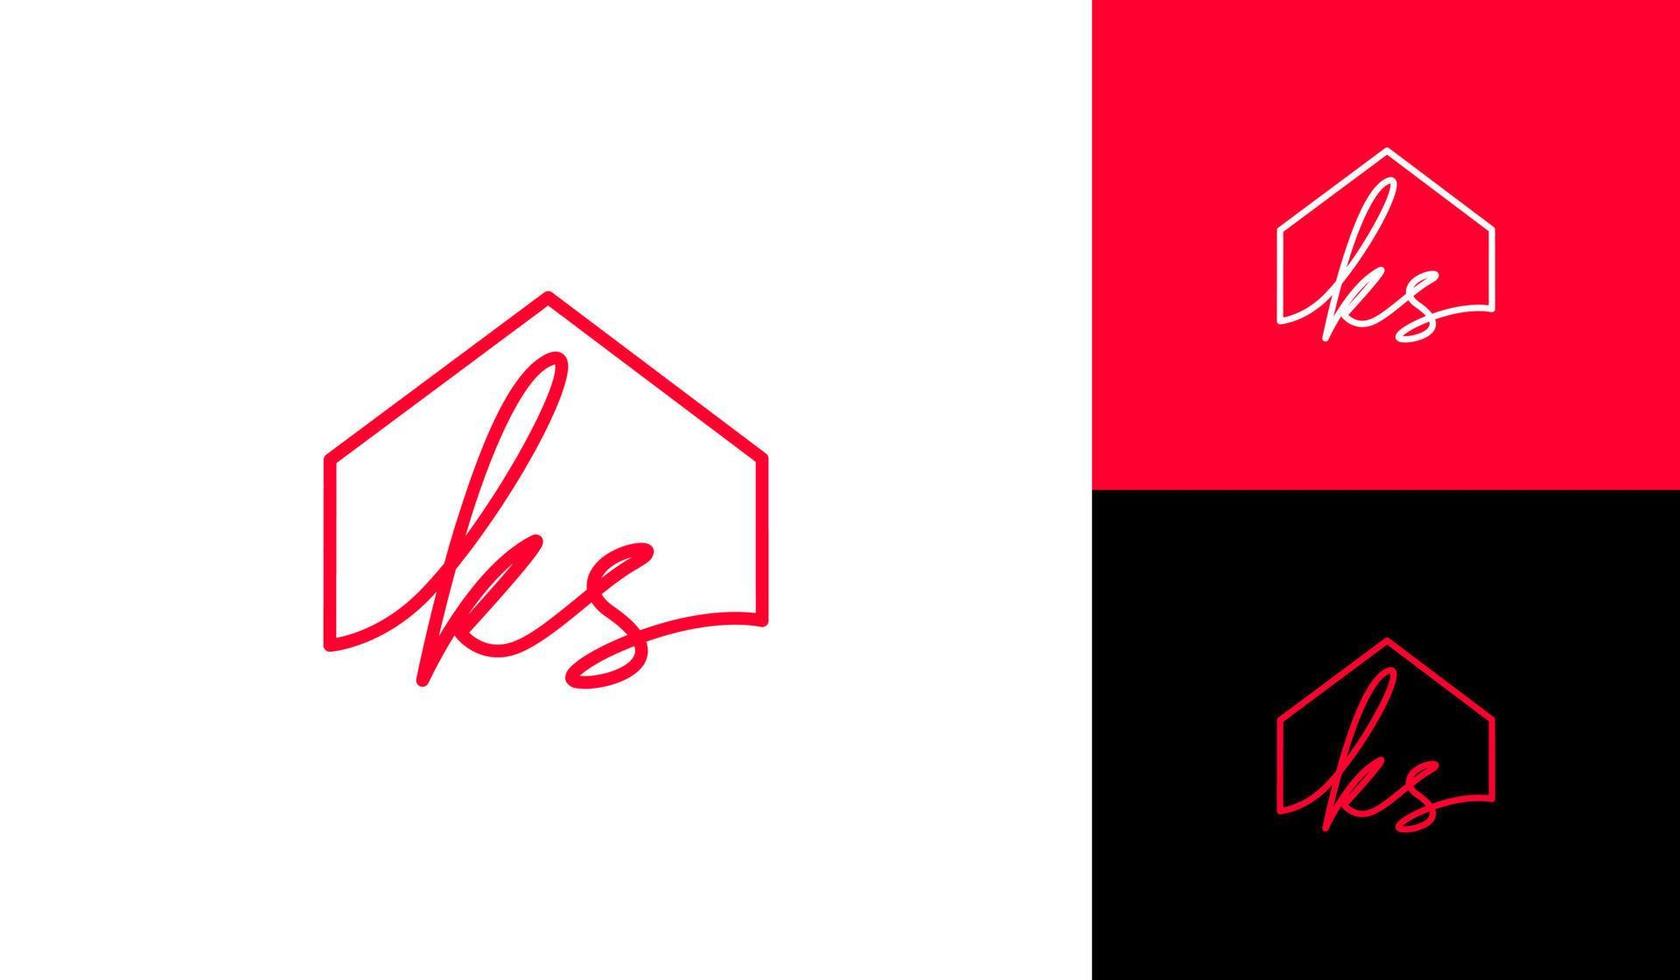 Handwritting letter KS with house logo design vector